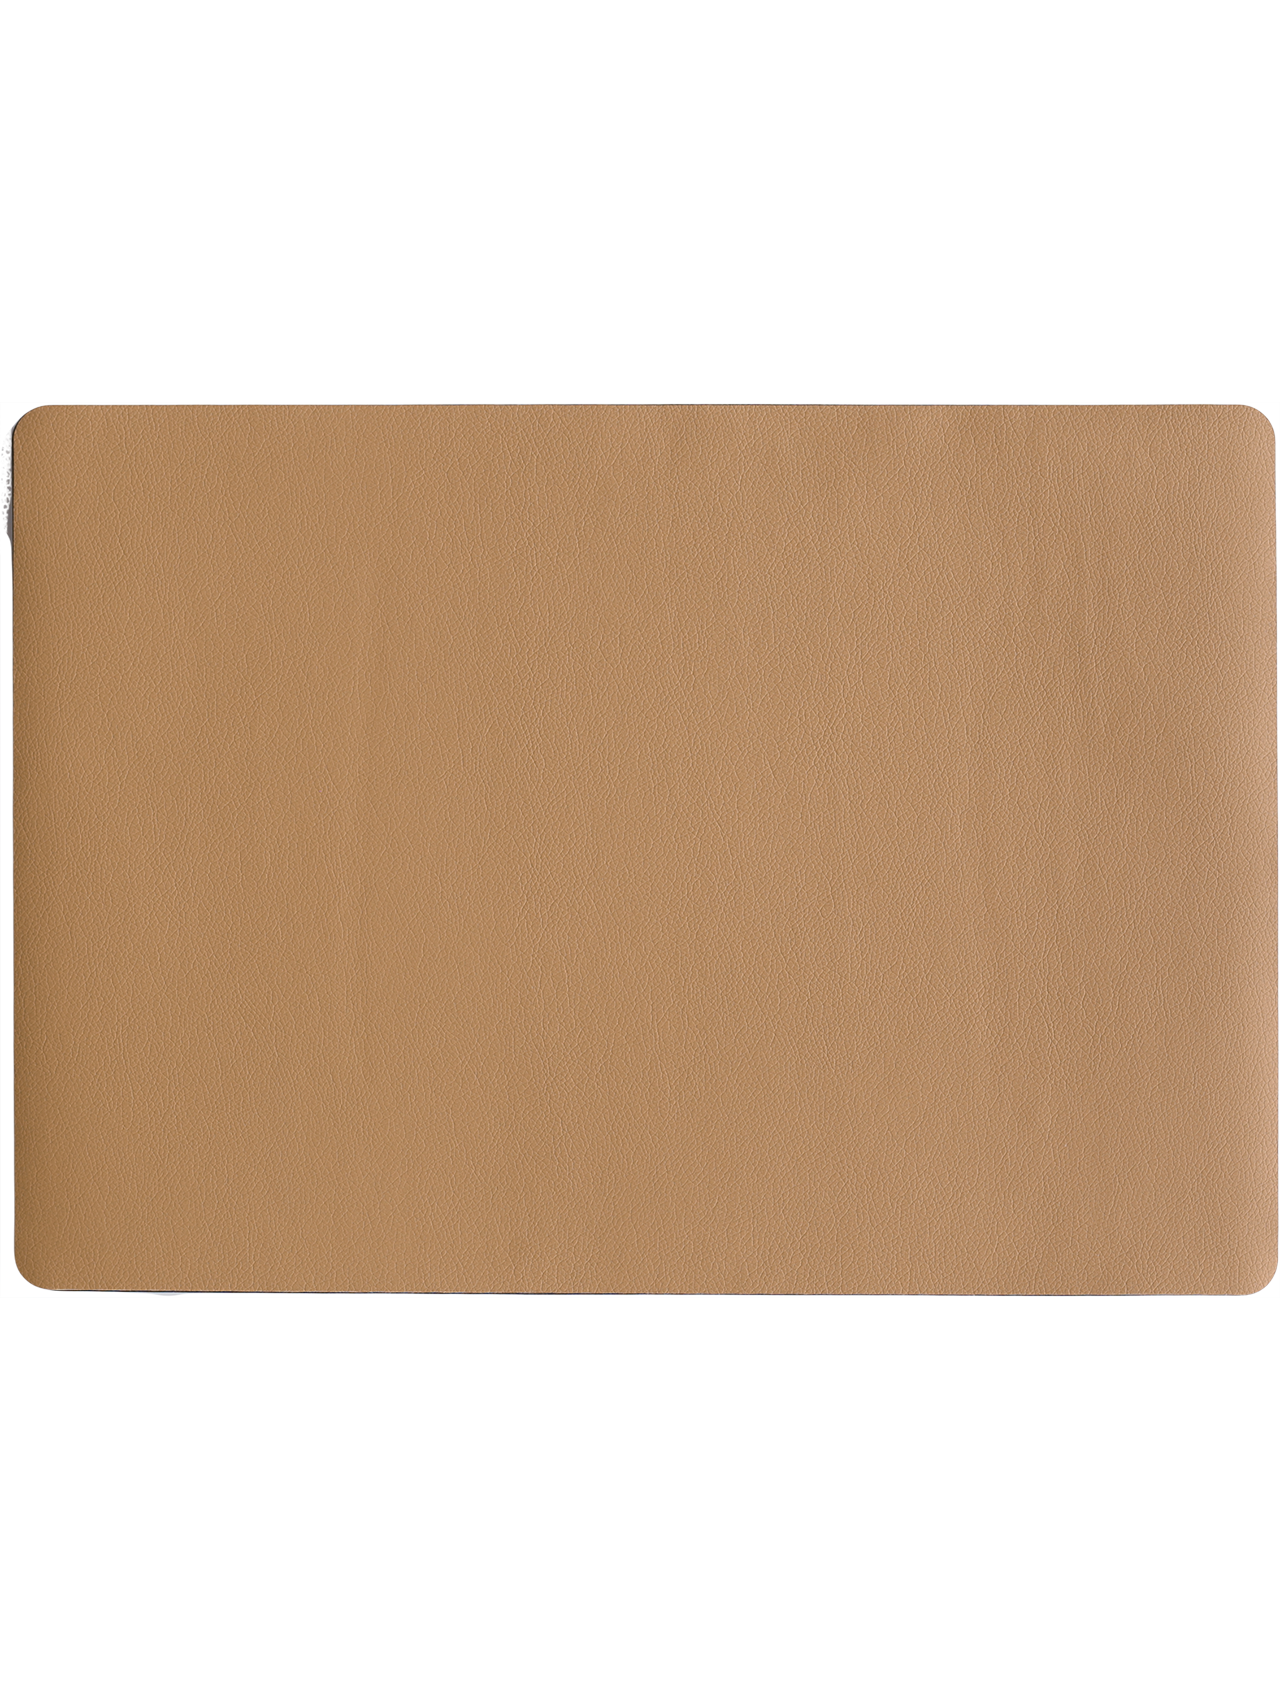 ASA leather optic Tischset eckig karamell braun 46 x 33 cm